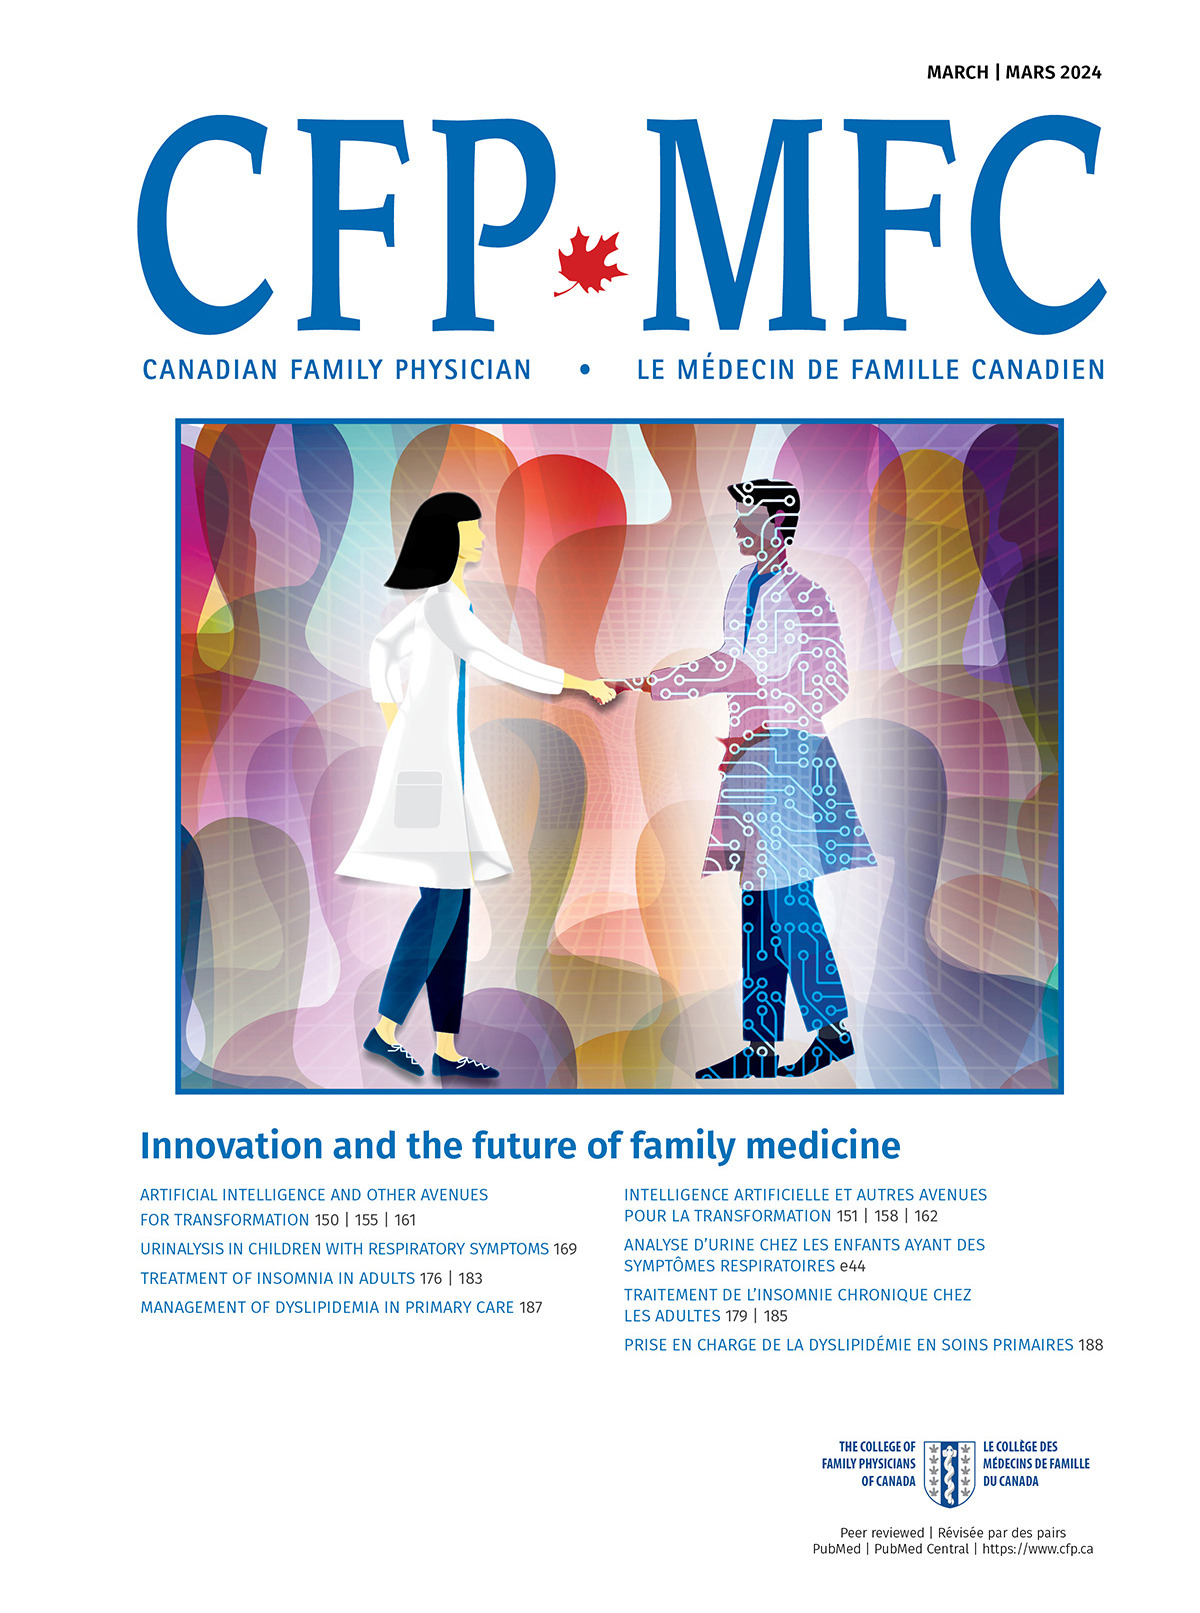 Lavenir de la medecine familiale au Canada: Quatre strategies fondees sur des donnees probantes pour transformer les soins de sante